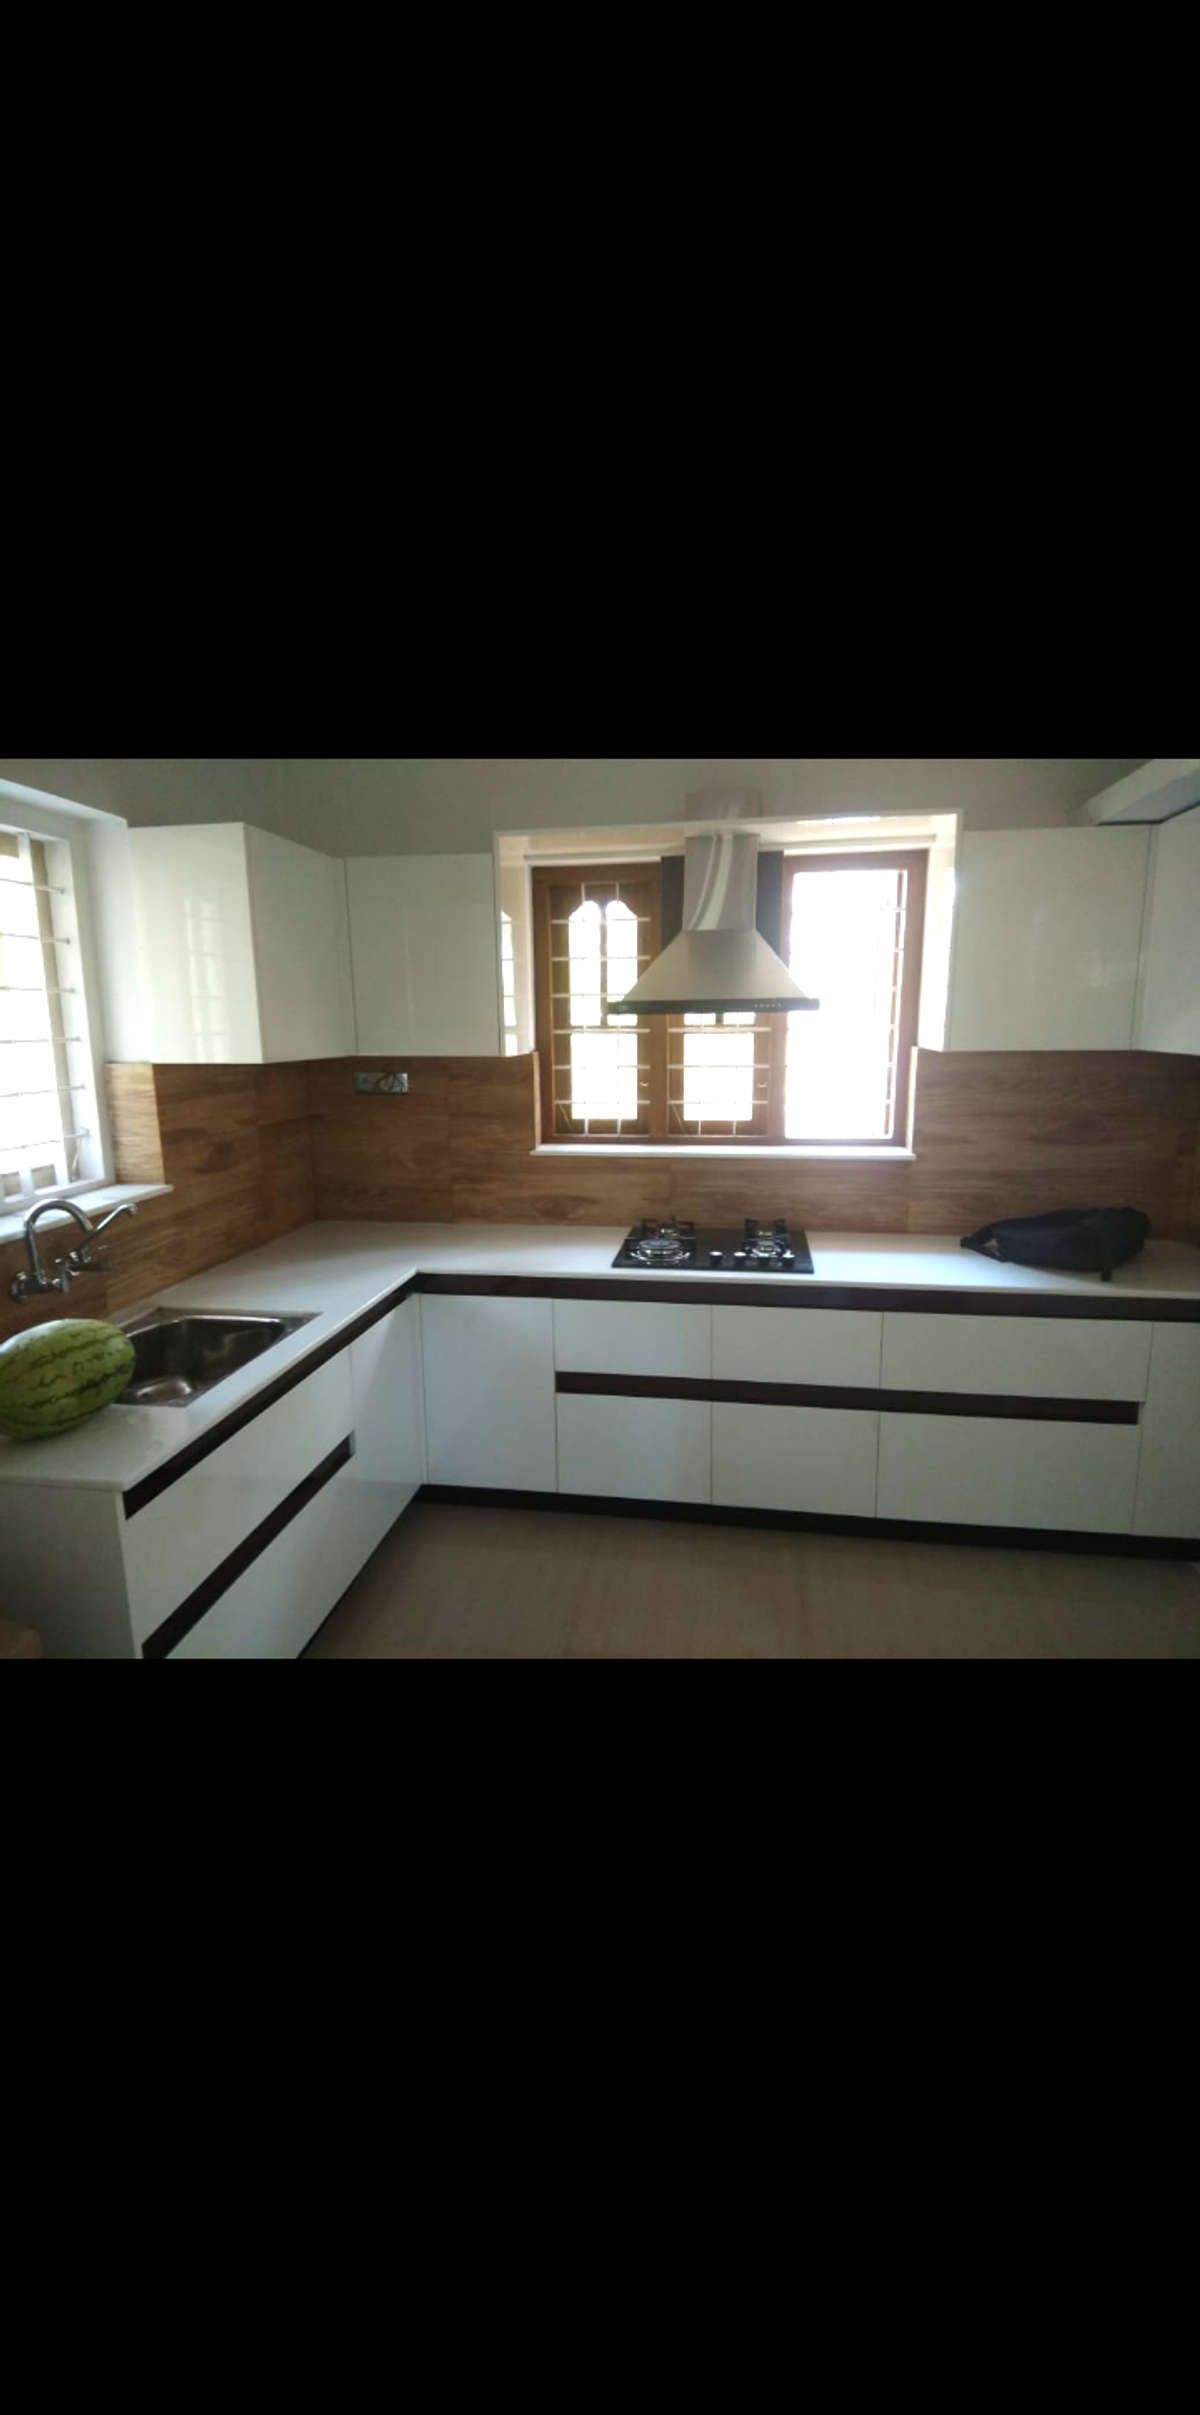 Kitchen, Storage Designs by Carpenter CYRIL RAPHAEL, Thrissur | Kolo